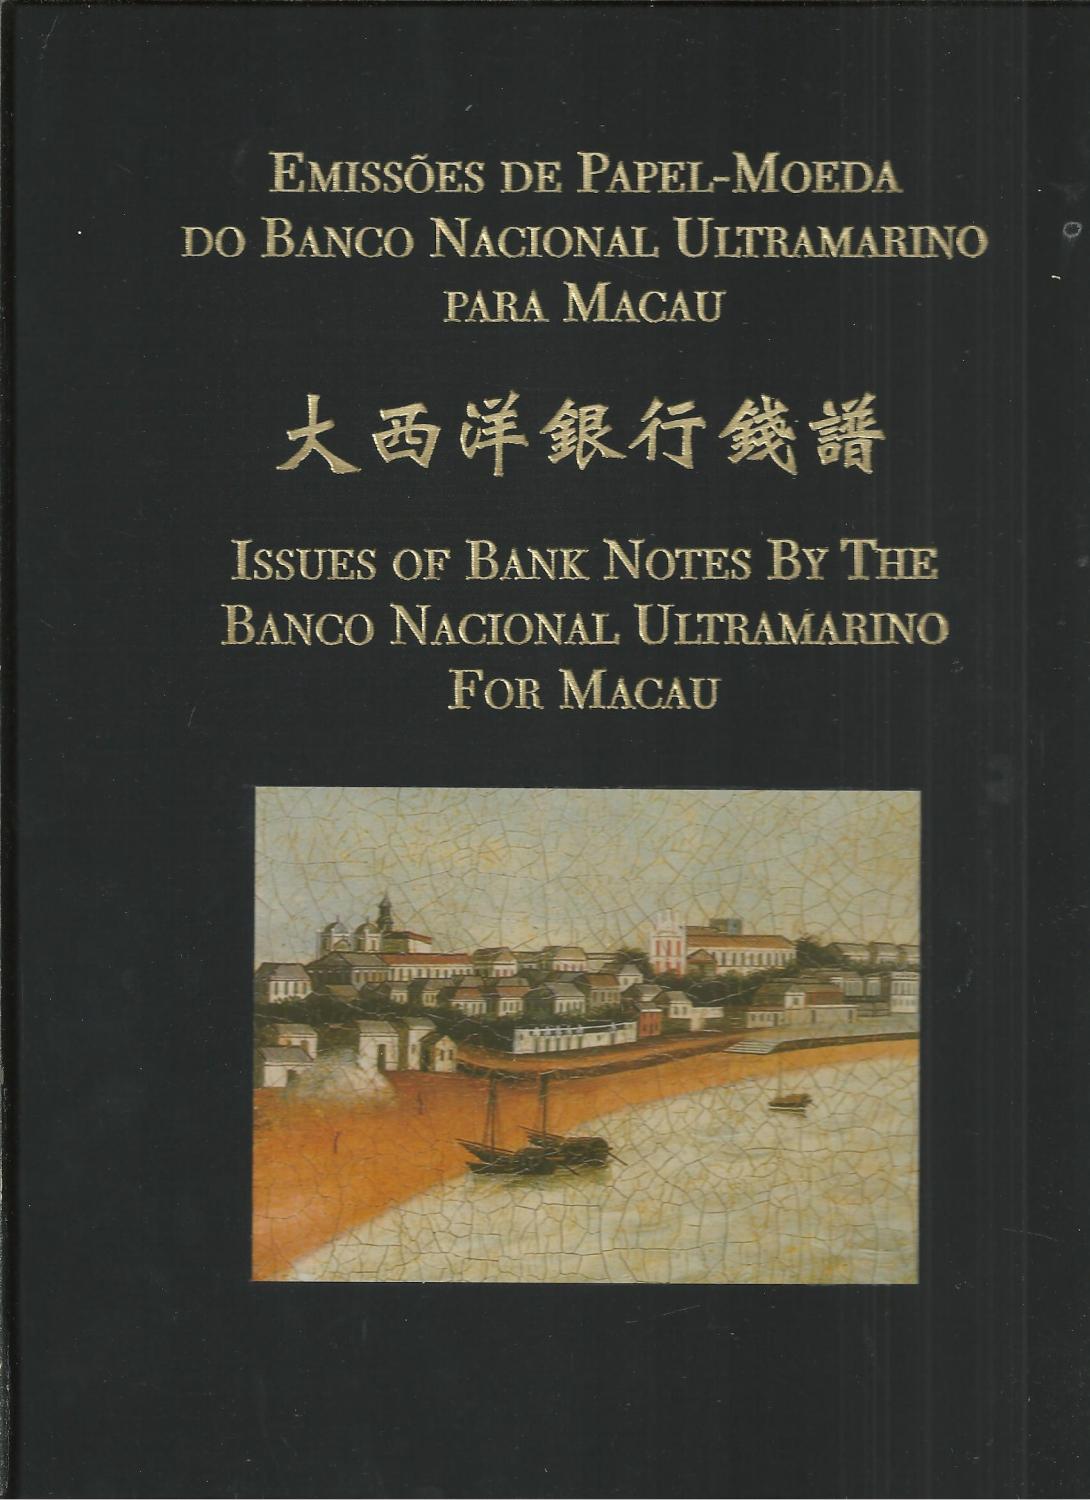 EMISSÕES DE PAPEL-MOEDA DO BANCO NACIONAL ULTRAMARINO PARA MACAU - ISSUES OF BANK NOTES BY THE BANCO NACIONAL ULTRAMARINO FOR MACAU